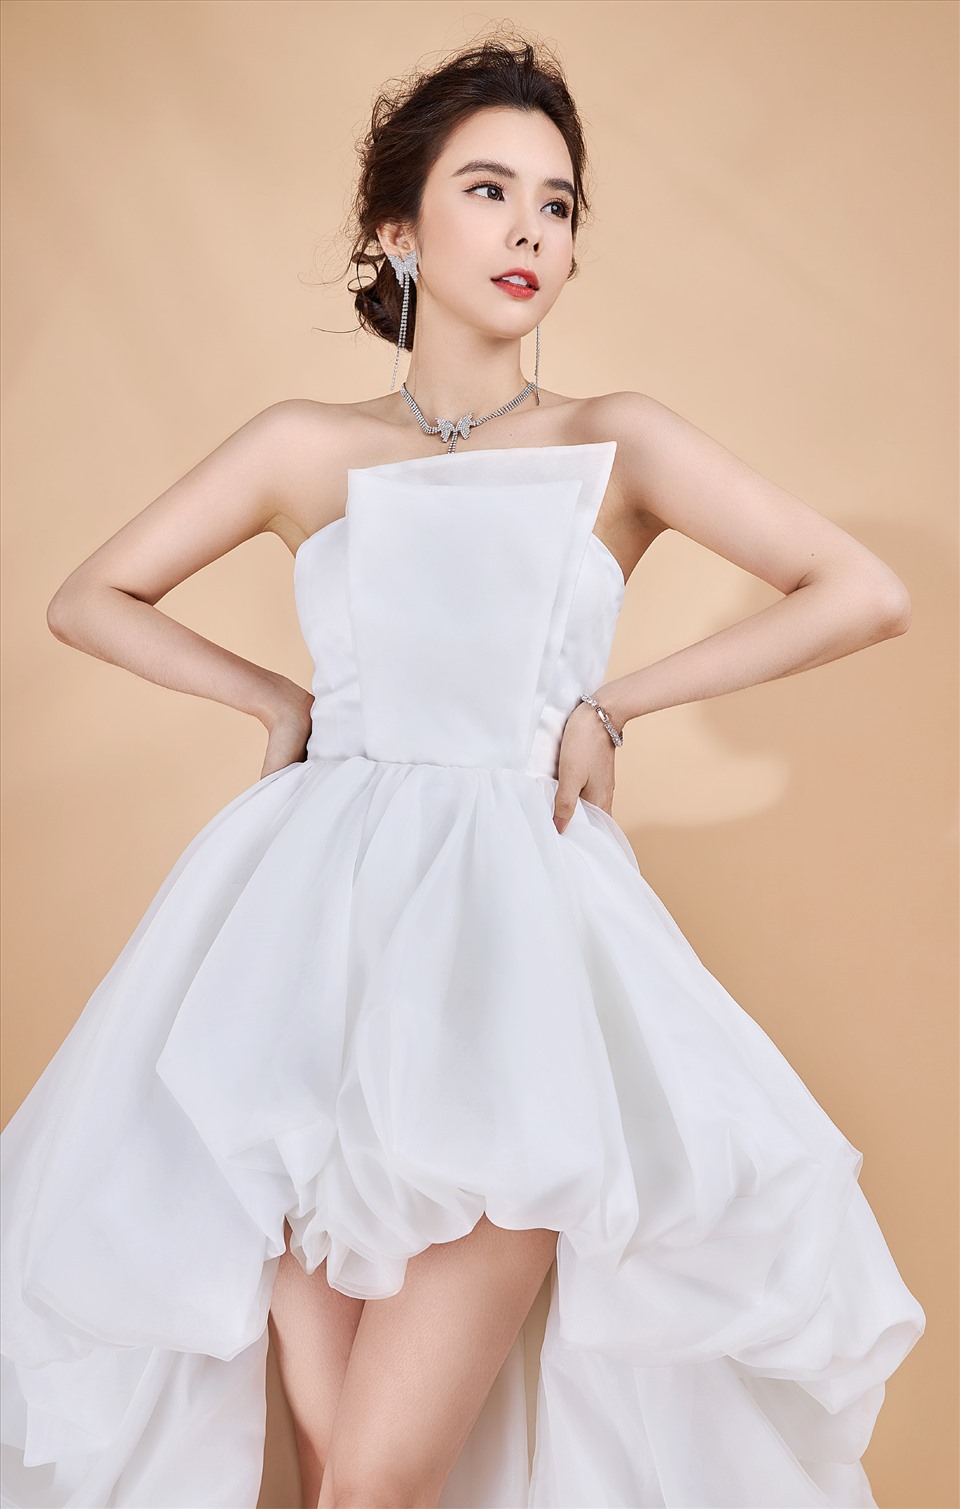 Vốn có mối quan hệ thân thiết, NTK Đức Vincie đã mời Huỳnh Vy chụp ảnh cùng những bộ váy này đầu tiên.